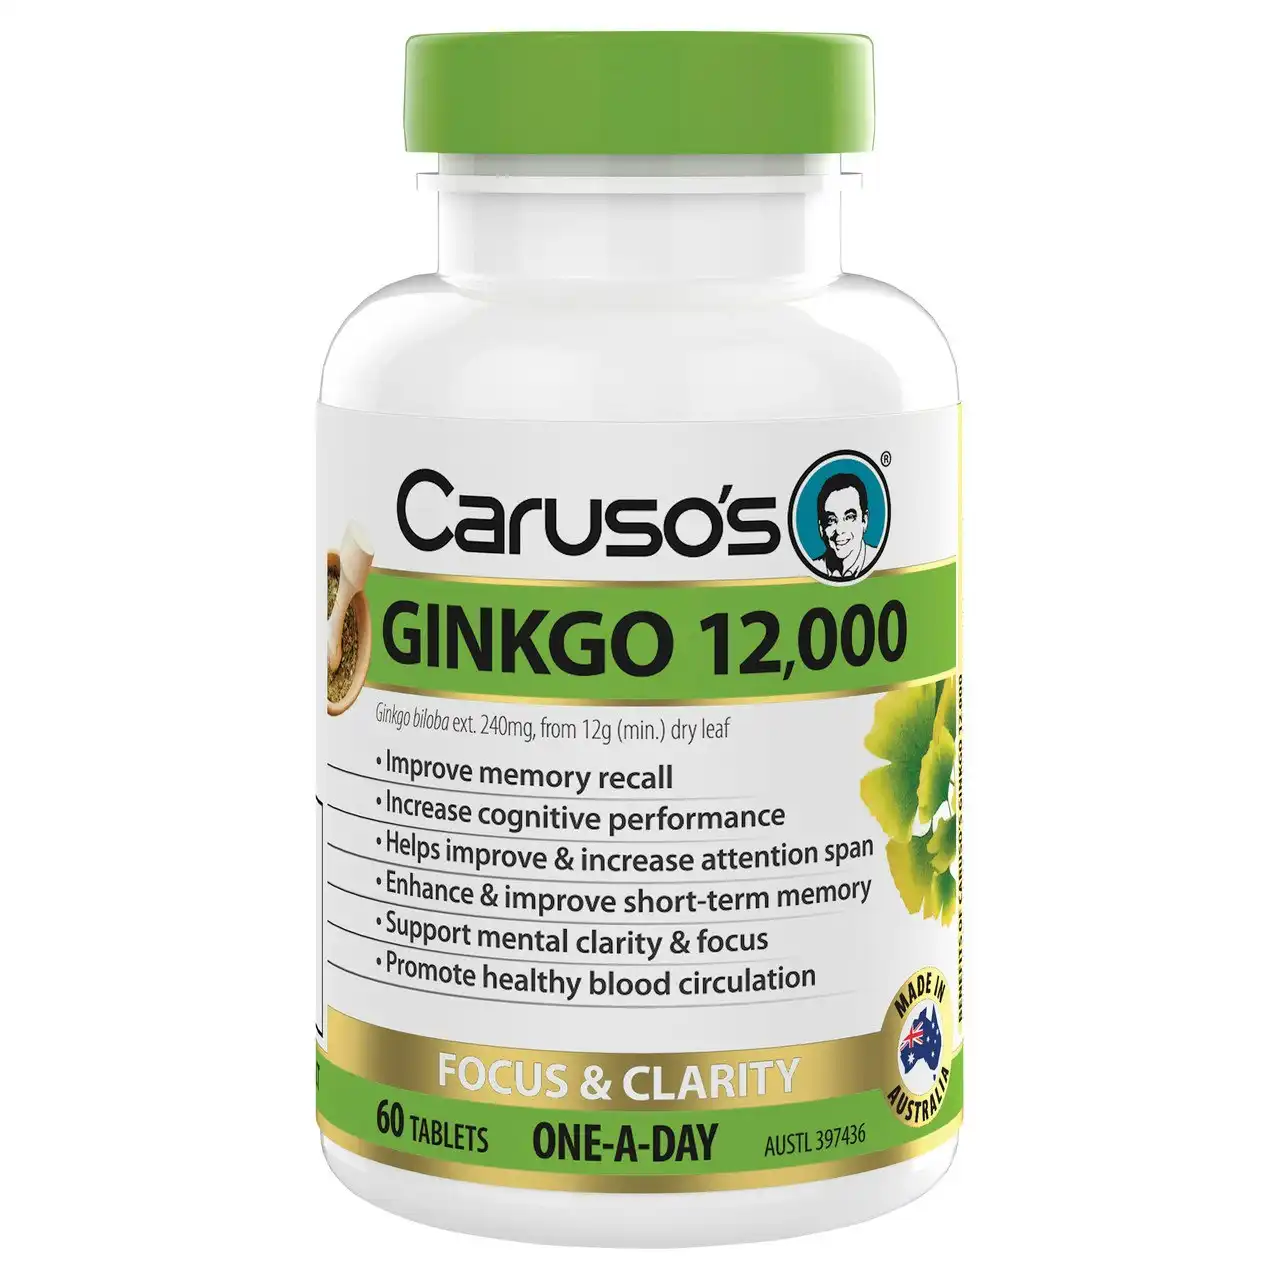 Caruso's Ginkgo 12,000